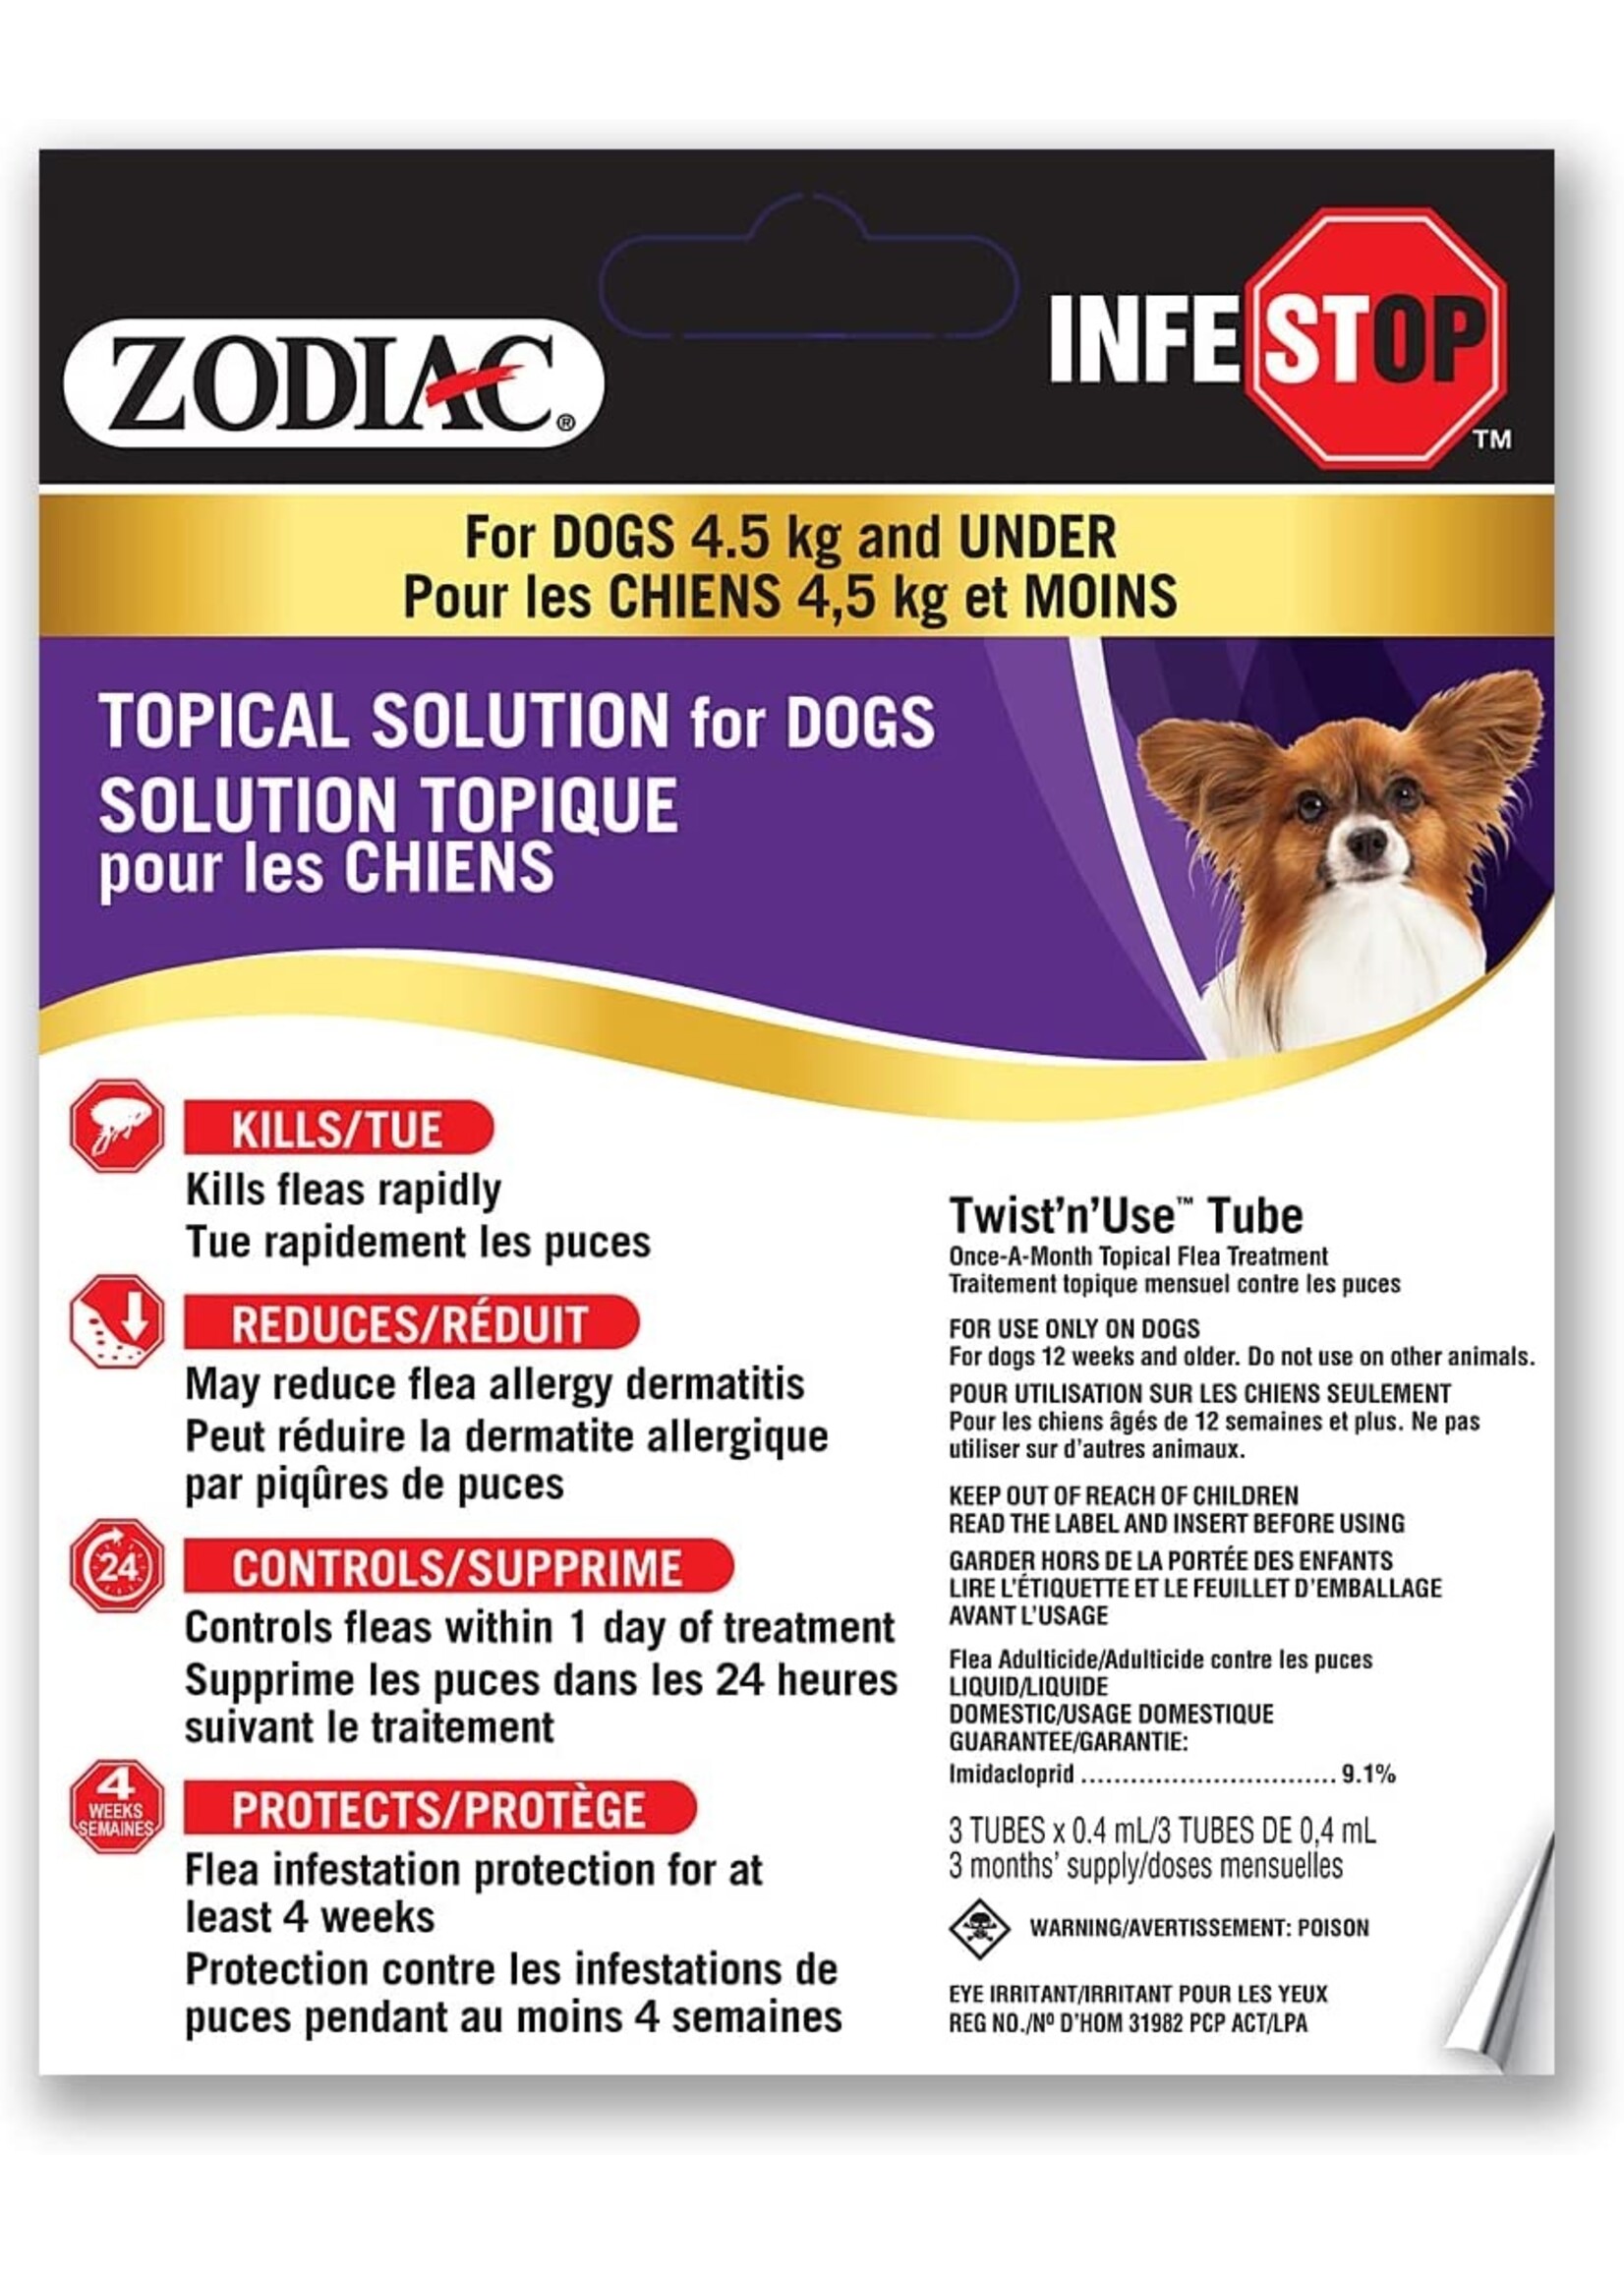 Zodiac Zodiac Dog Infestop